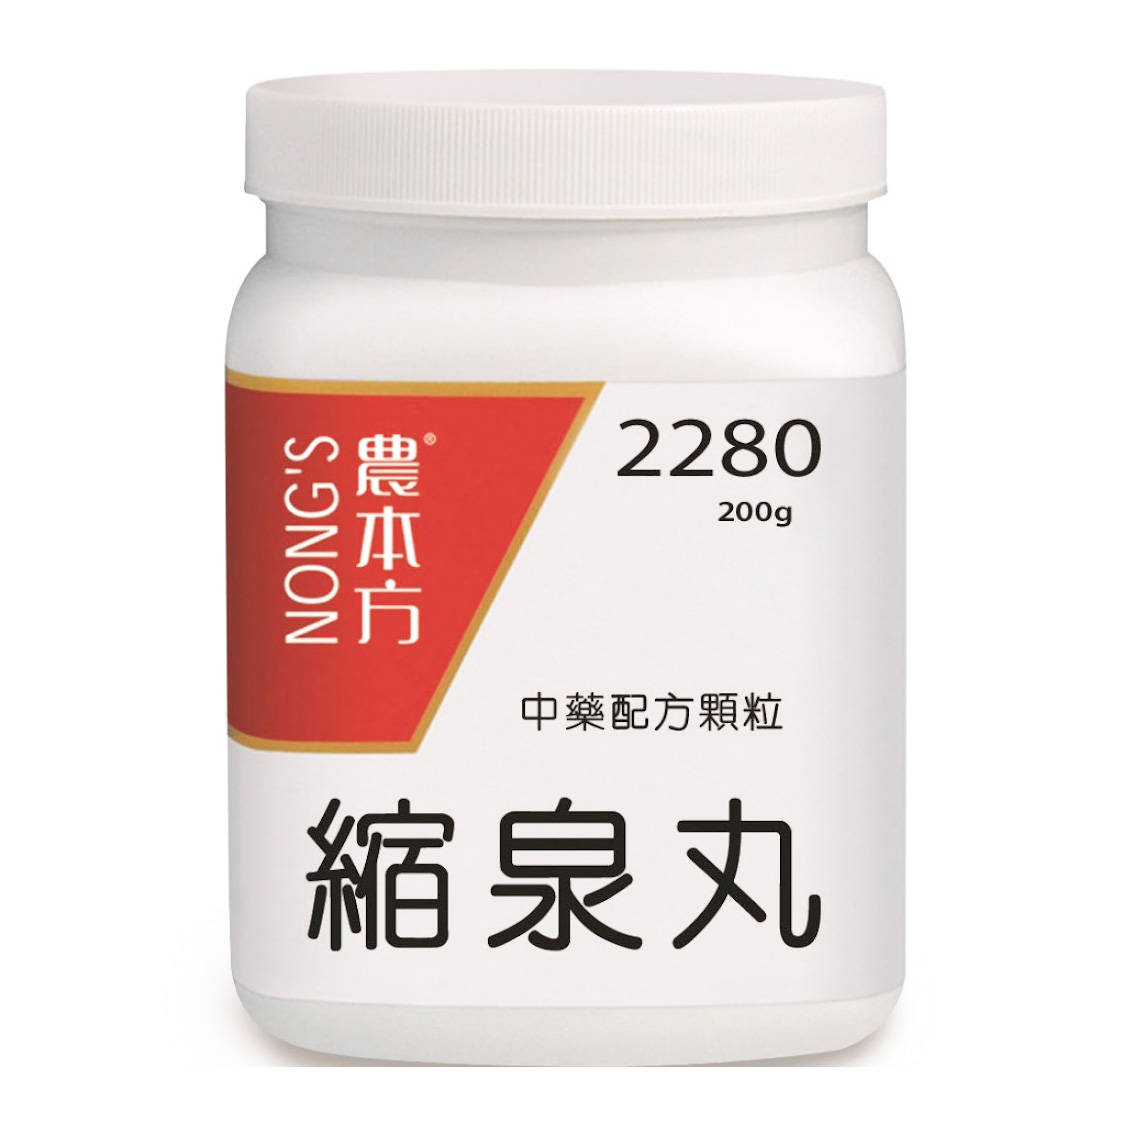 【香港中醫網】 白色塑膠容器，有白色蓋子，標有紅黑文字「農本縮泉丸Suo Quan Wan(2280)」。標籤還包含漢字，包括“縮泉丸”（縮泉丸）。背景是純白色的。